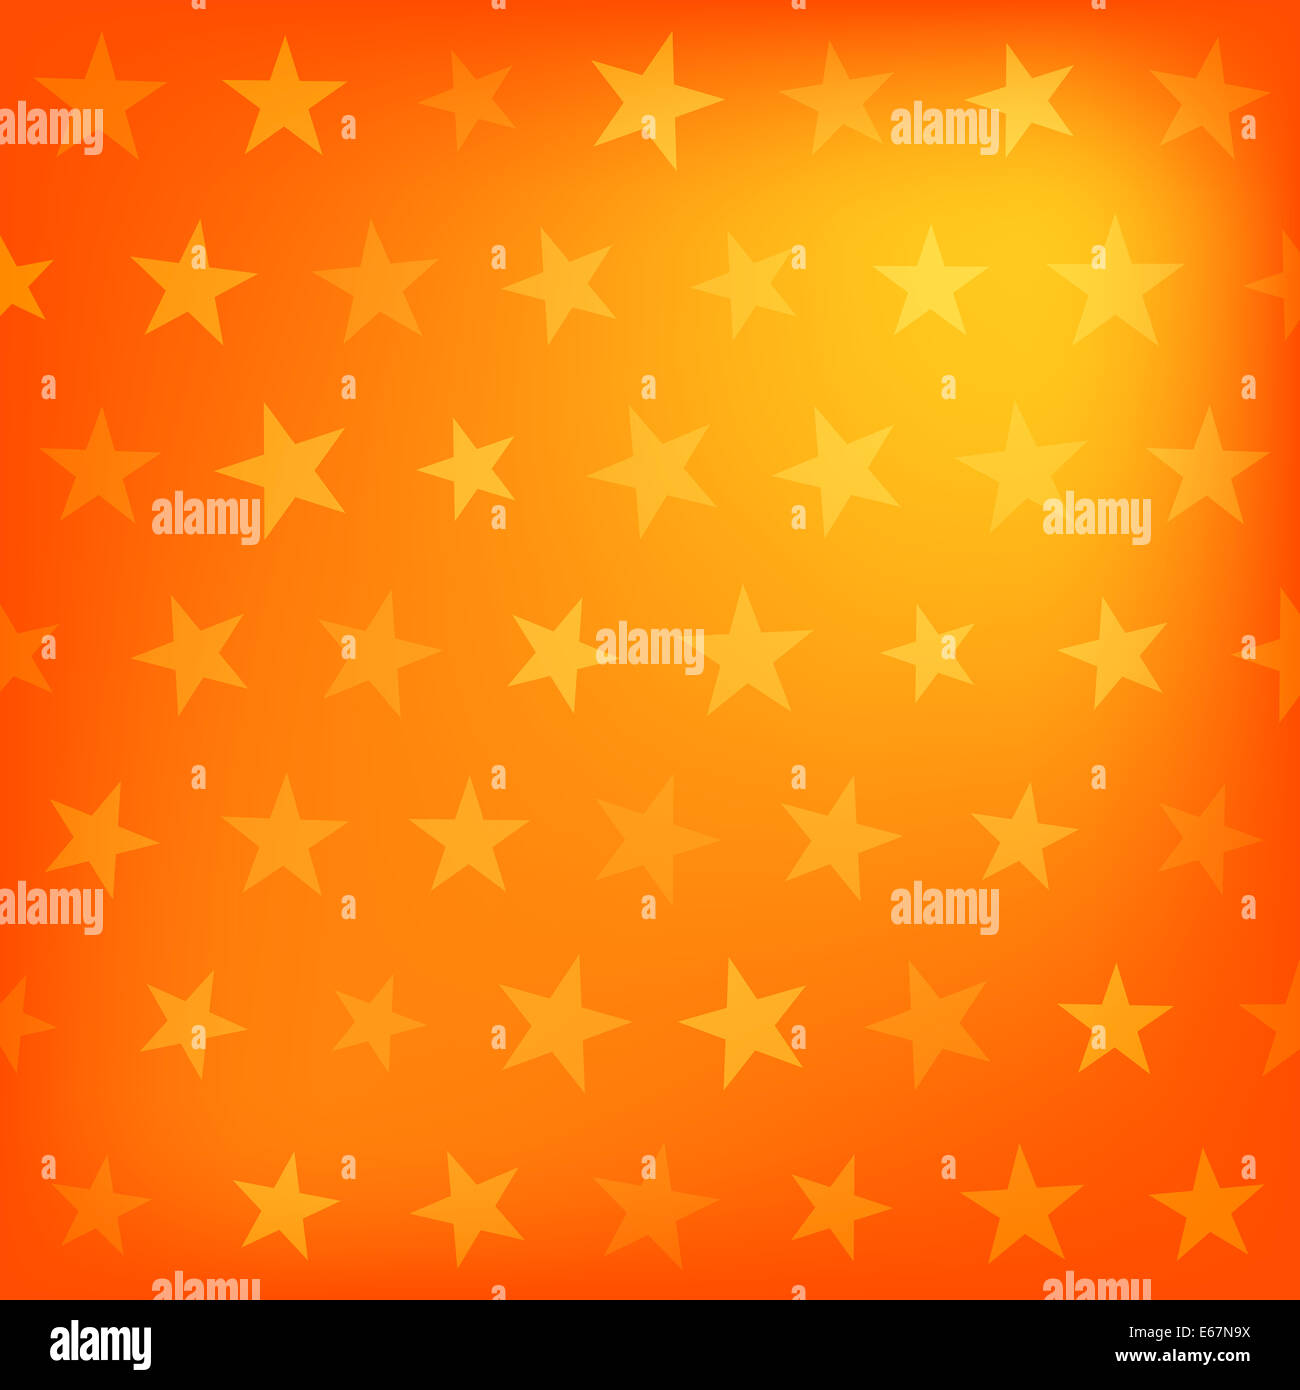 Motif de fond étoile orange Banque D'Images